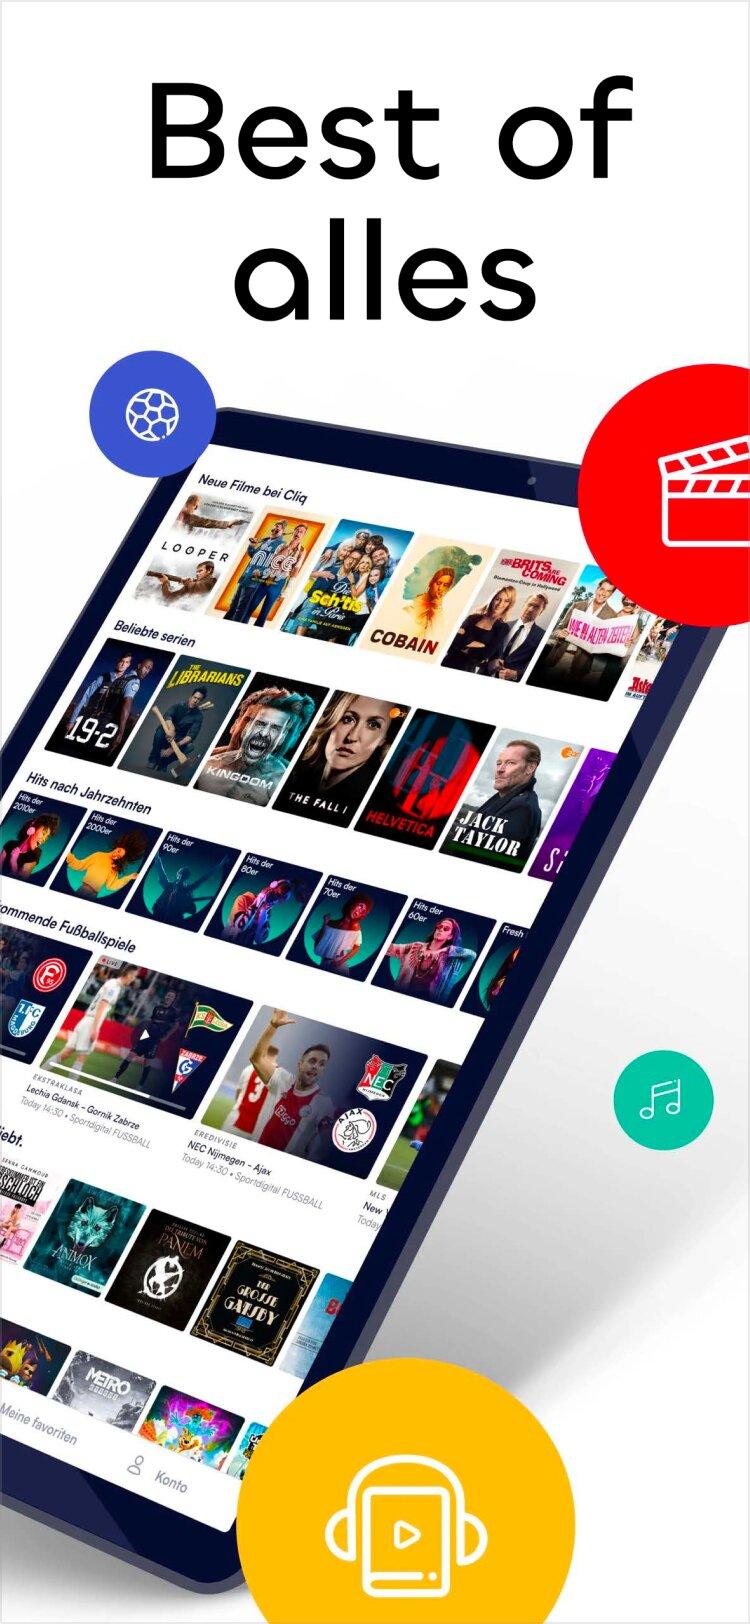 Cliq native mobile and TV app 2